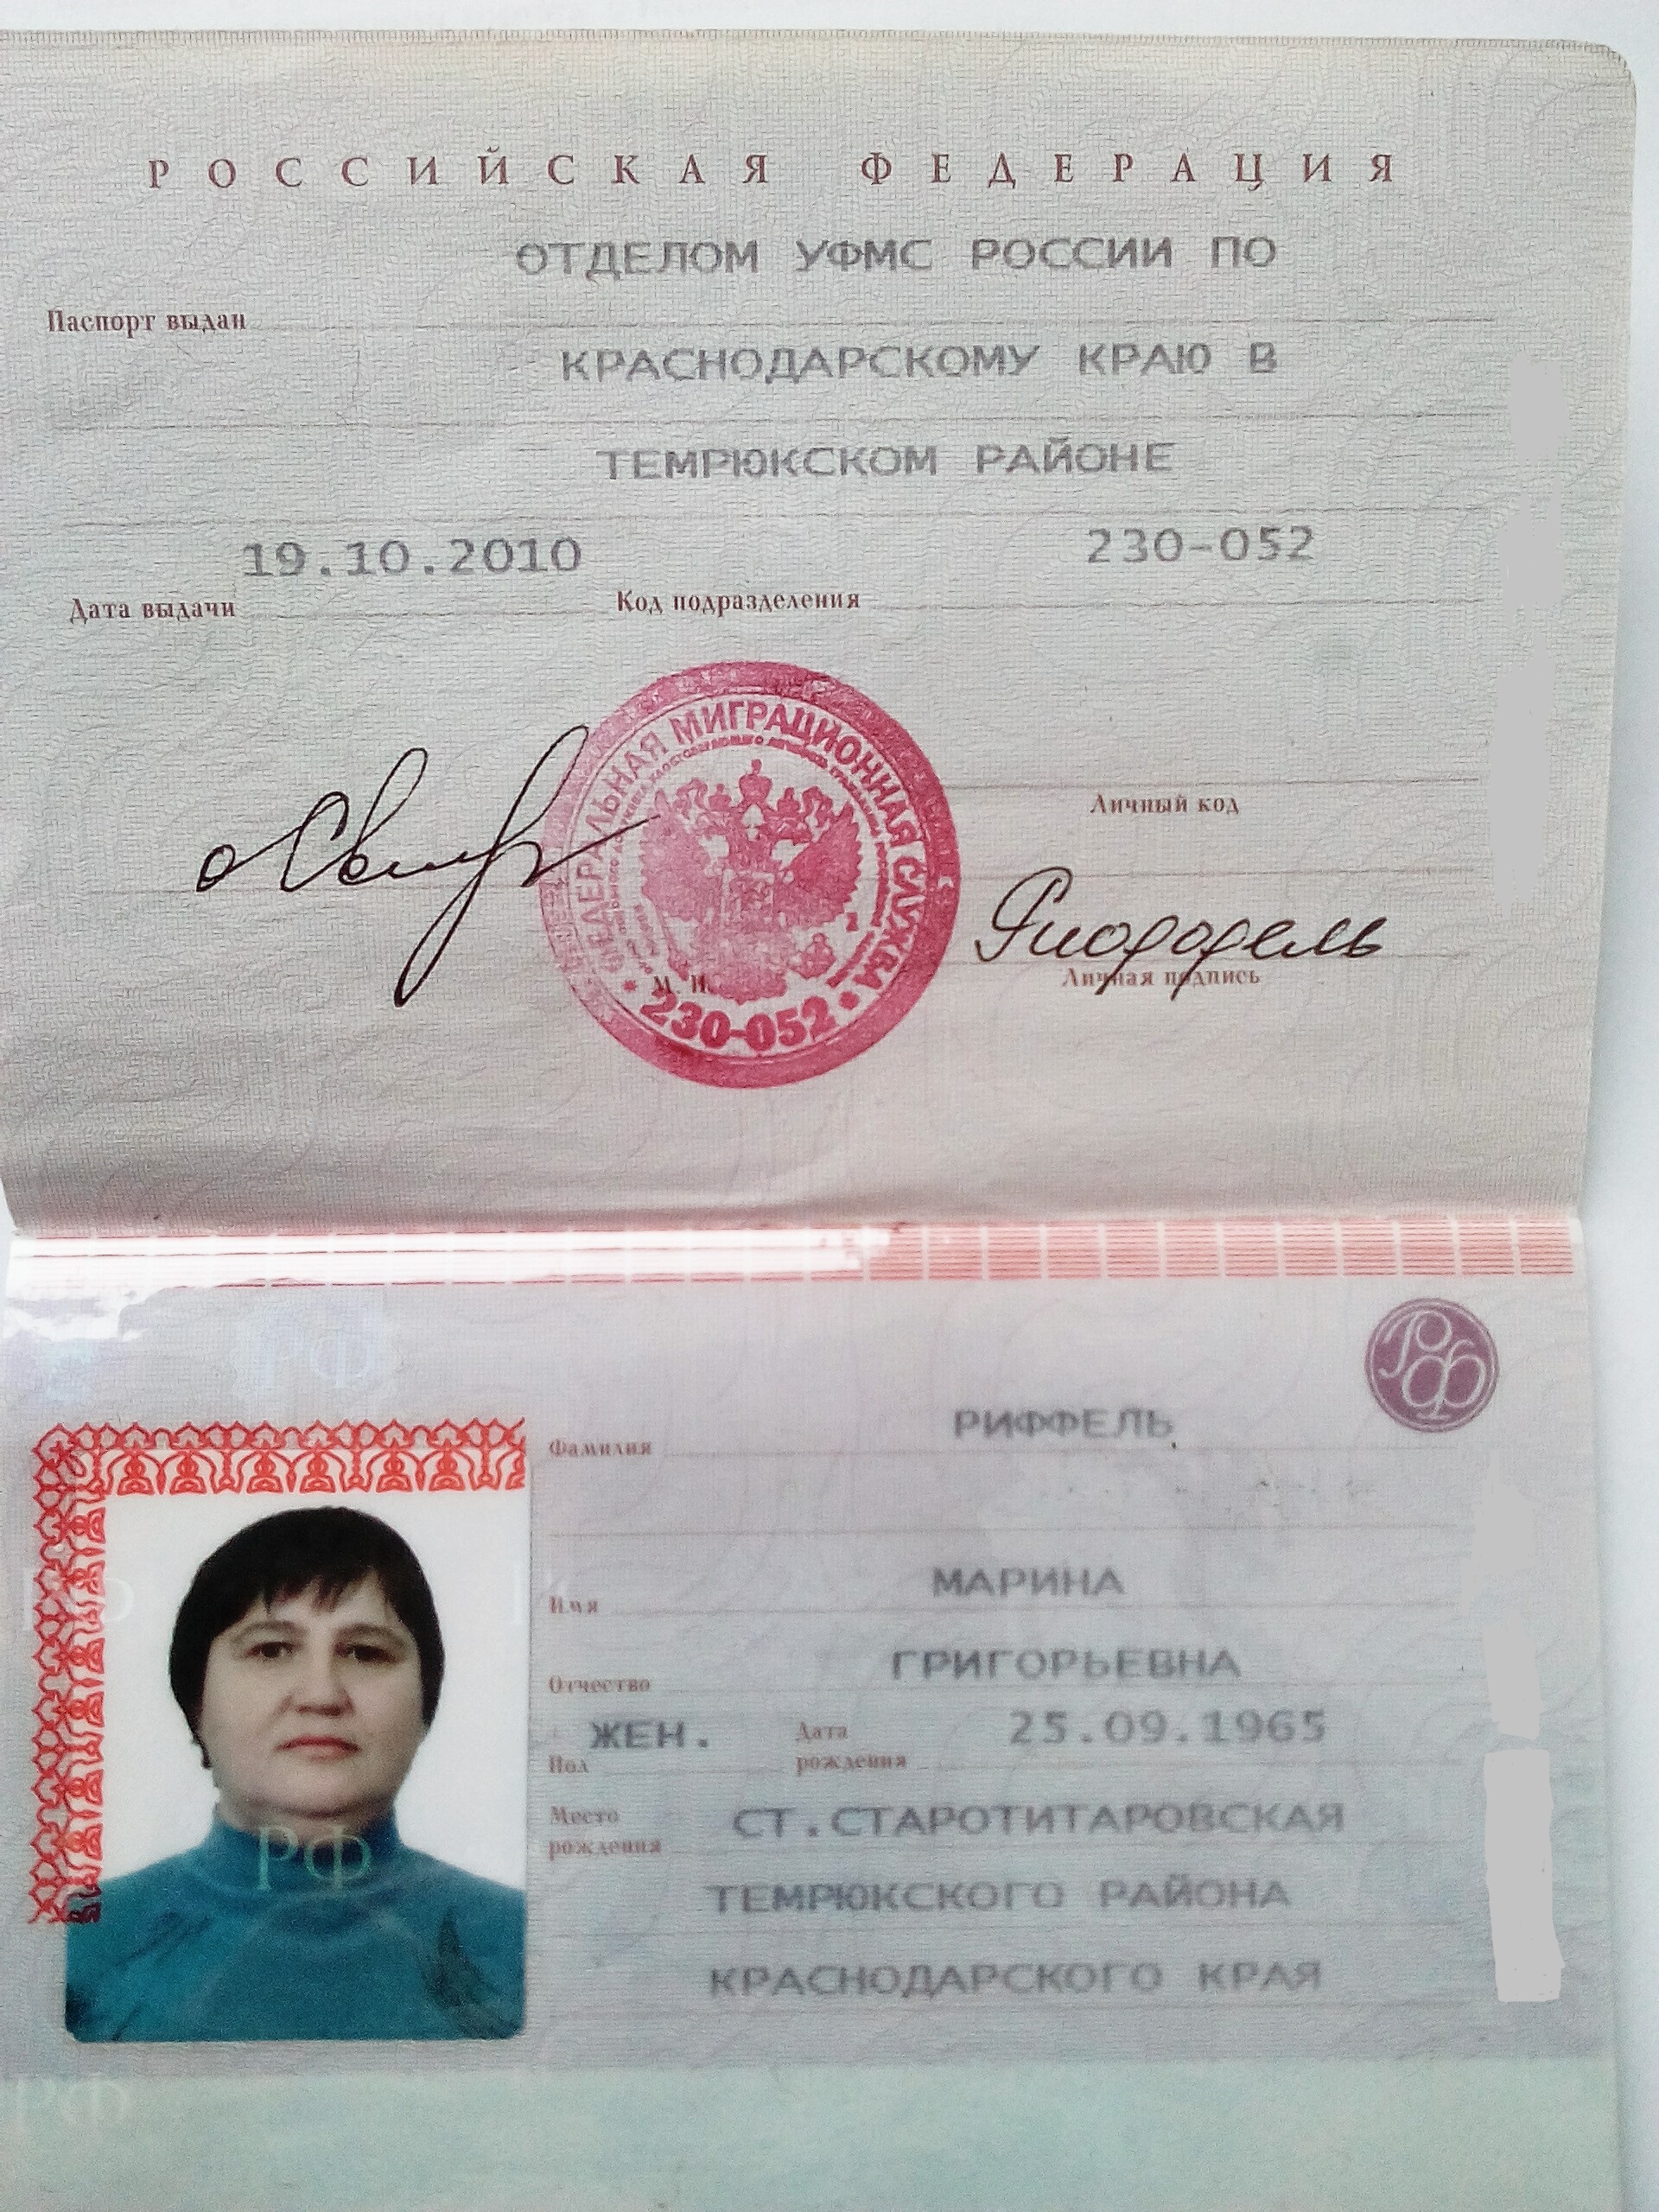 Код подразделения города москвы. Код подразделения. Паспортные данные Краснодарский край.